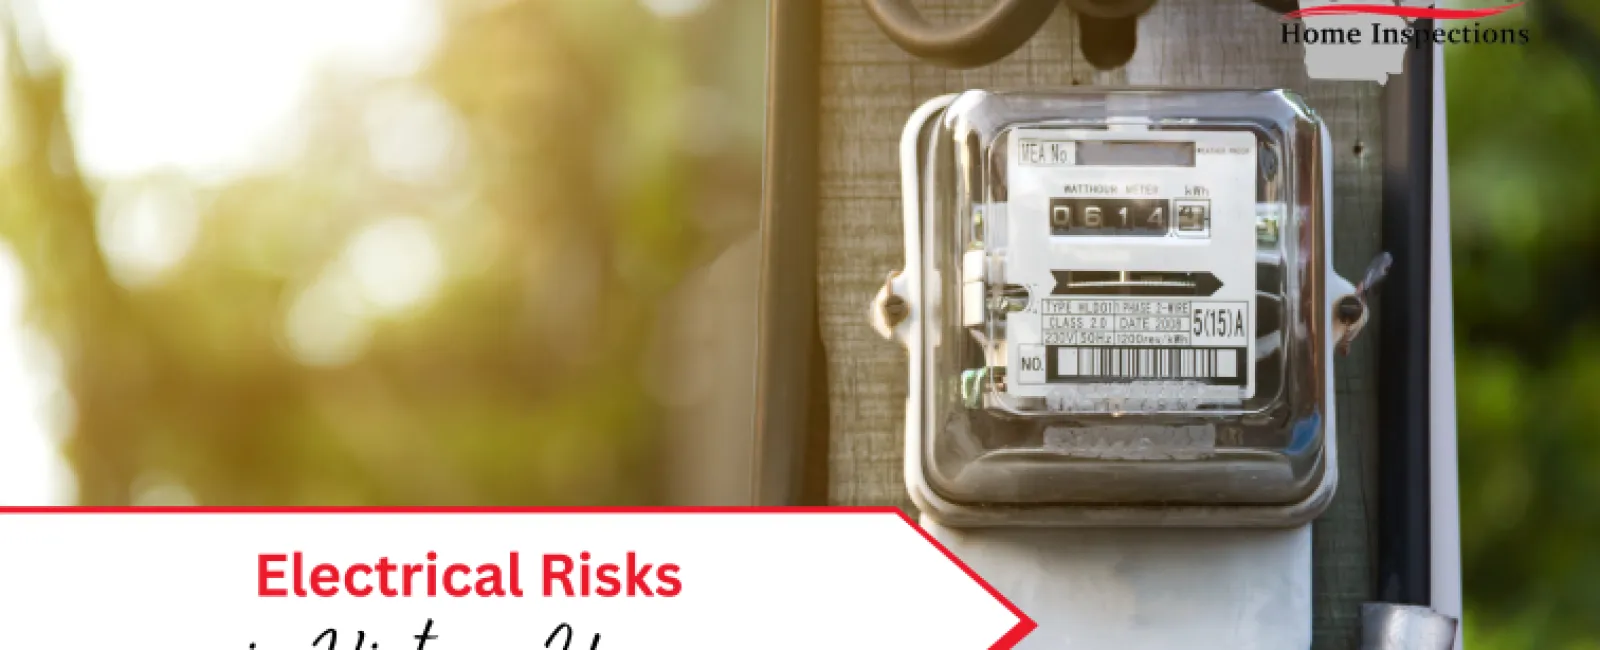 Electrical Risks in Vintage Homes